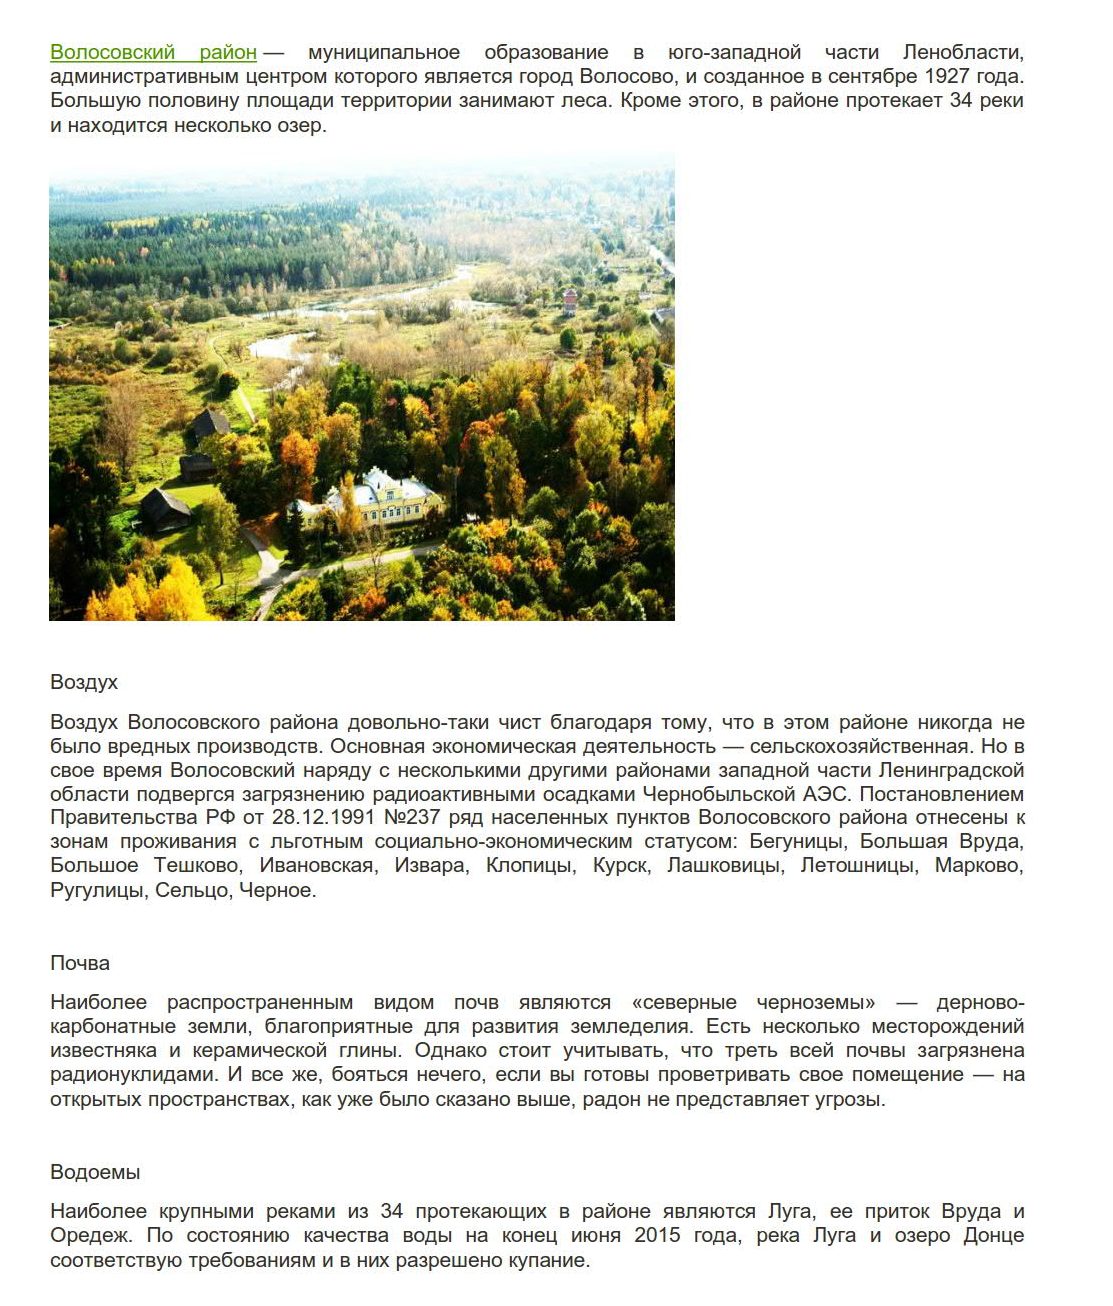 Доклад: Заметки по поводу неудавшейся дискуссии российских экологов